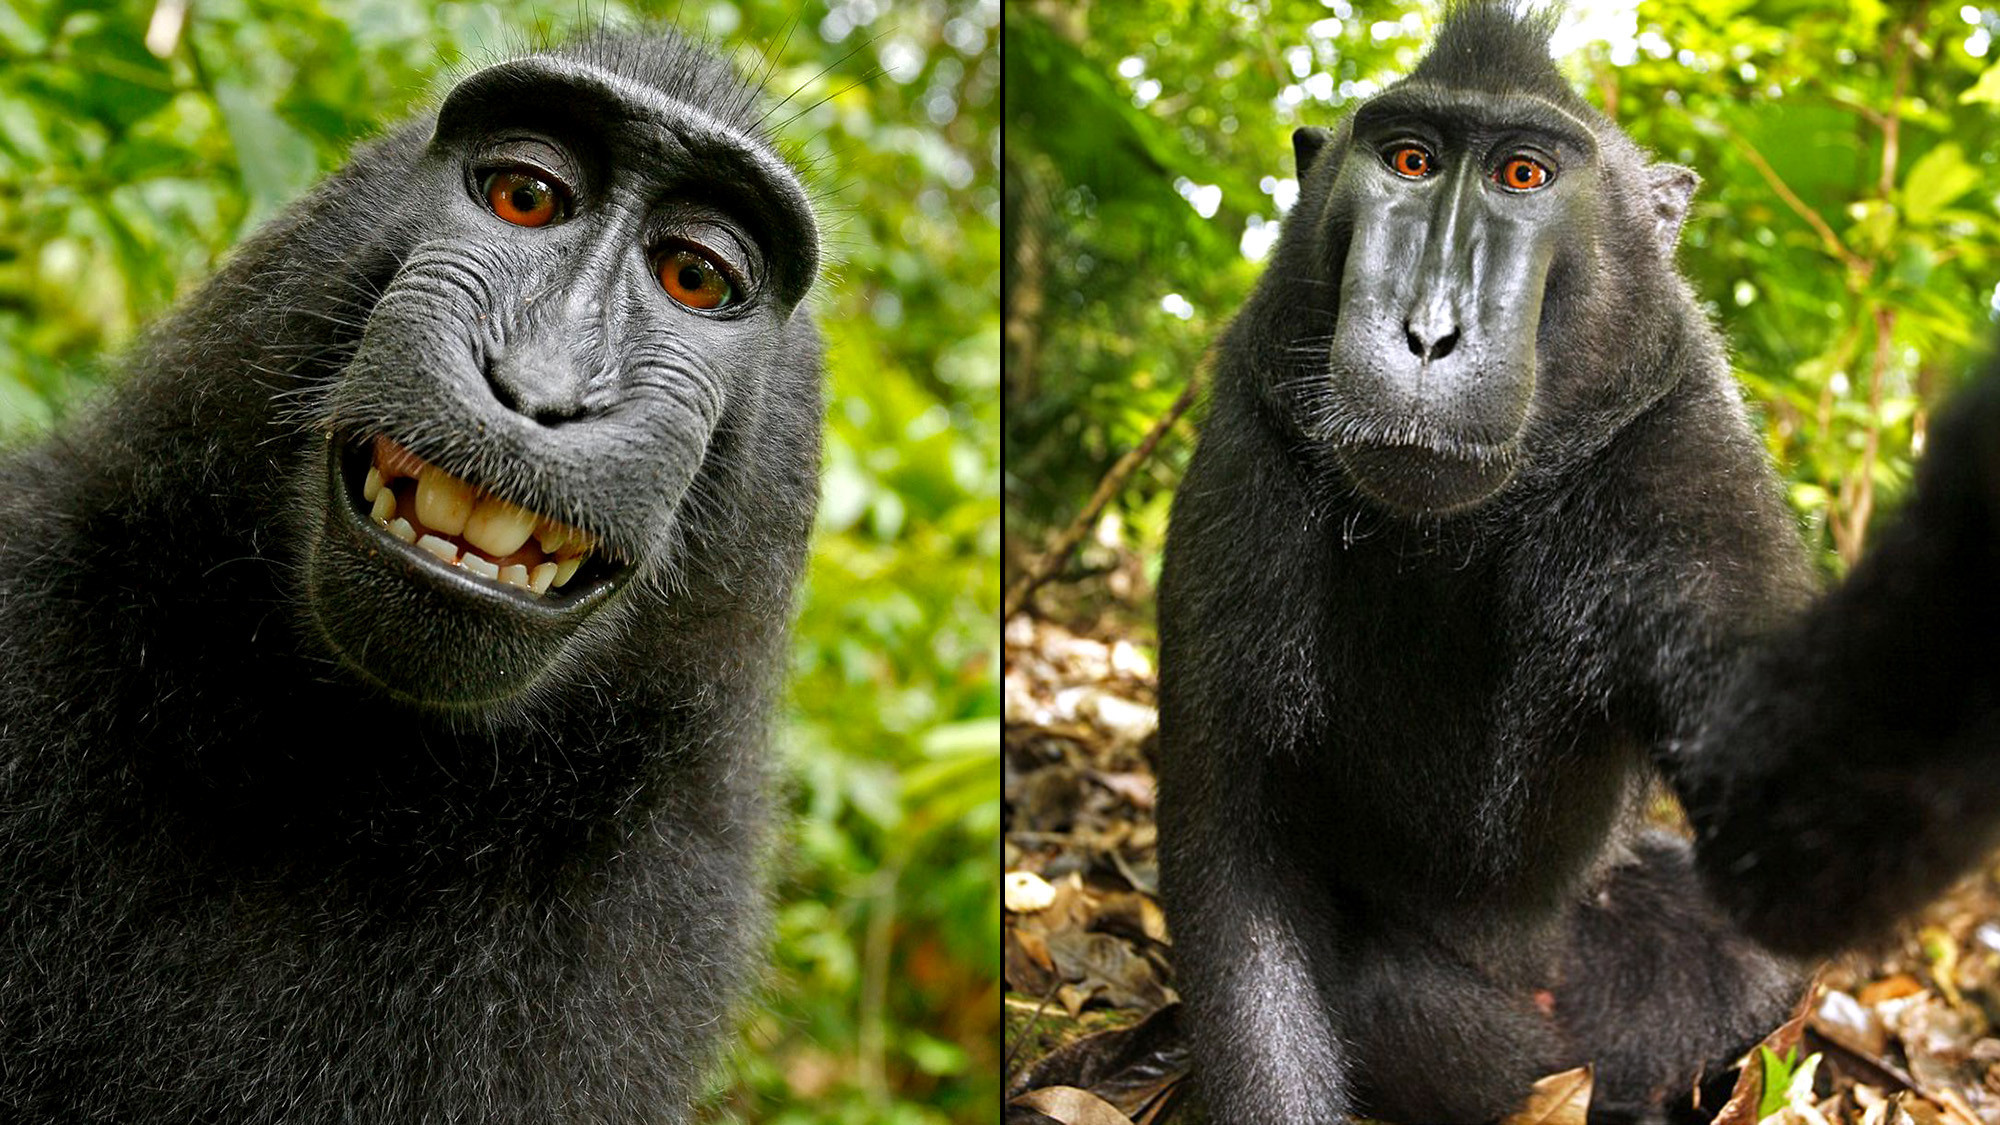 Kết luận về bức ảnh ‘Chú khỉ tự sướng’ và câu chuyện bản quyền 1